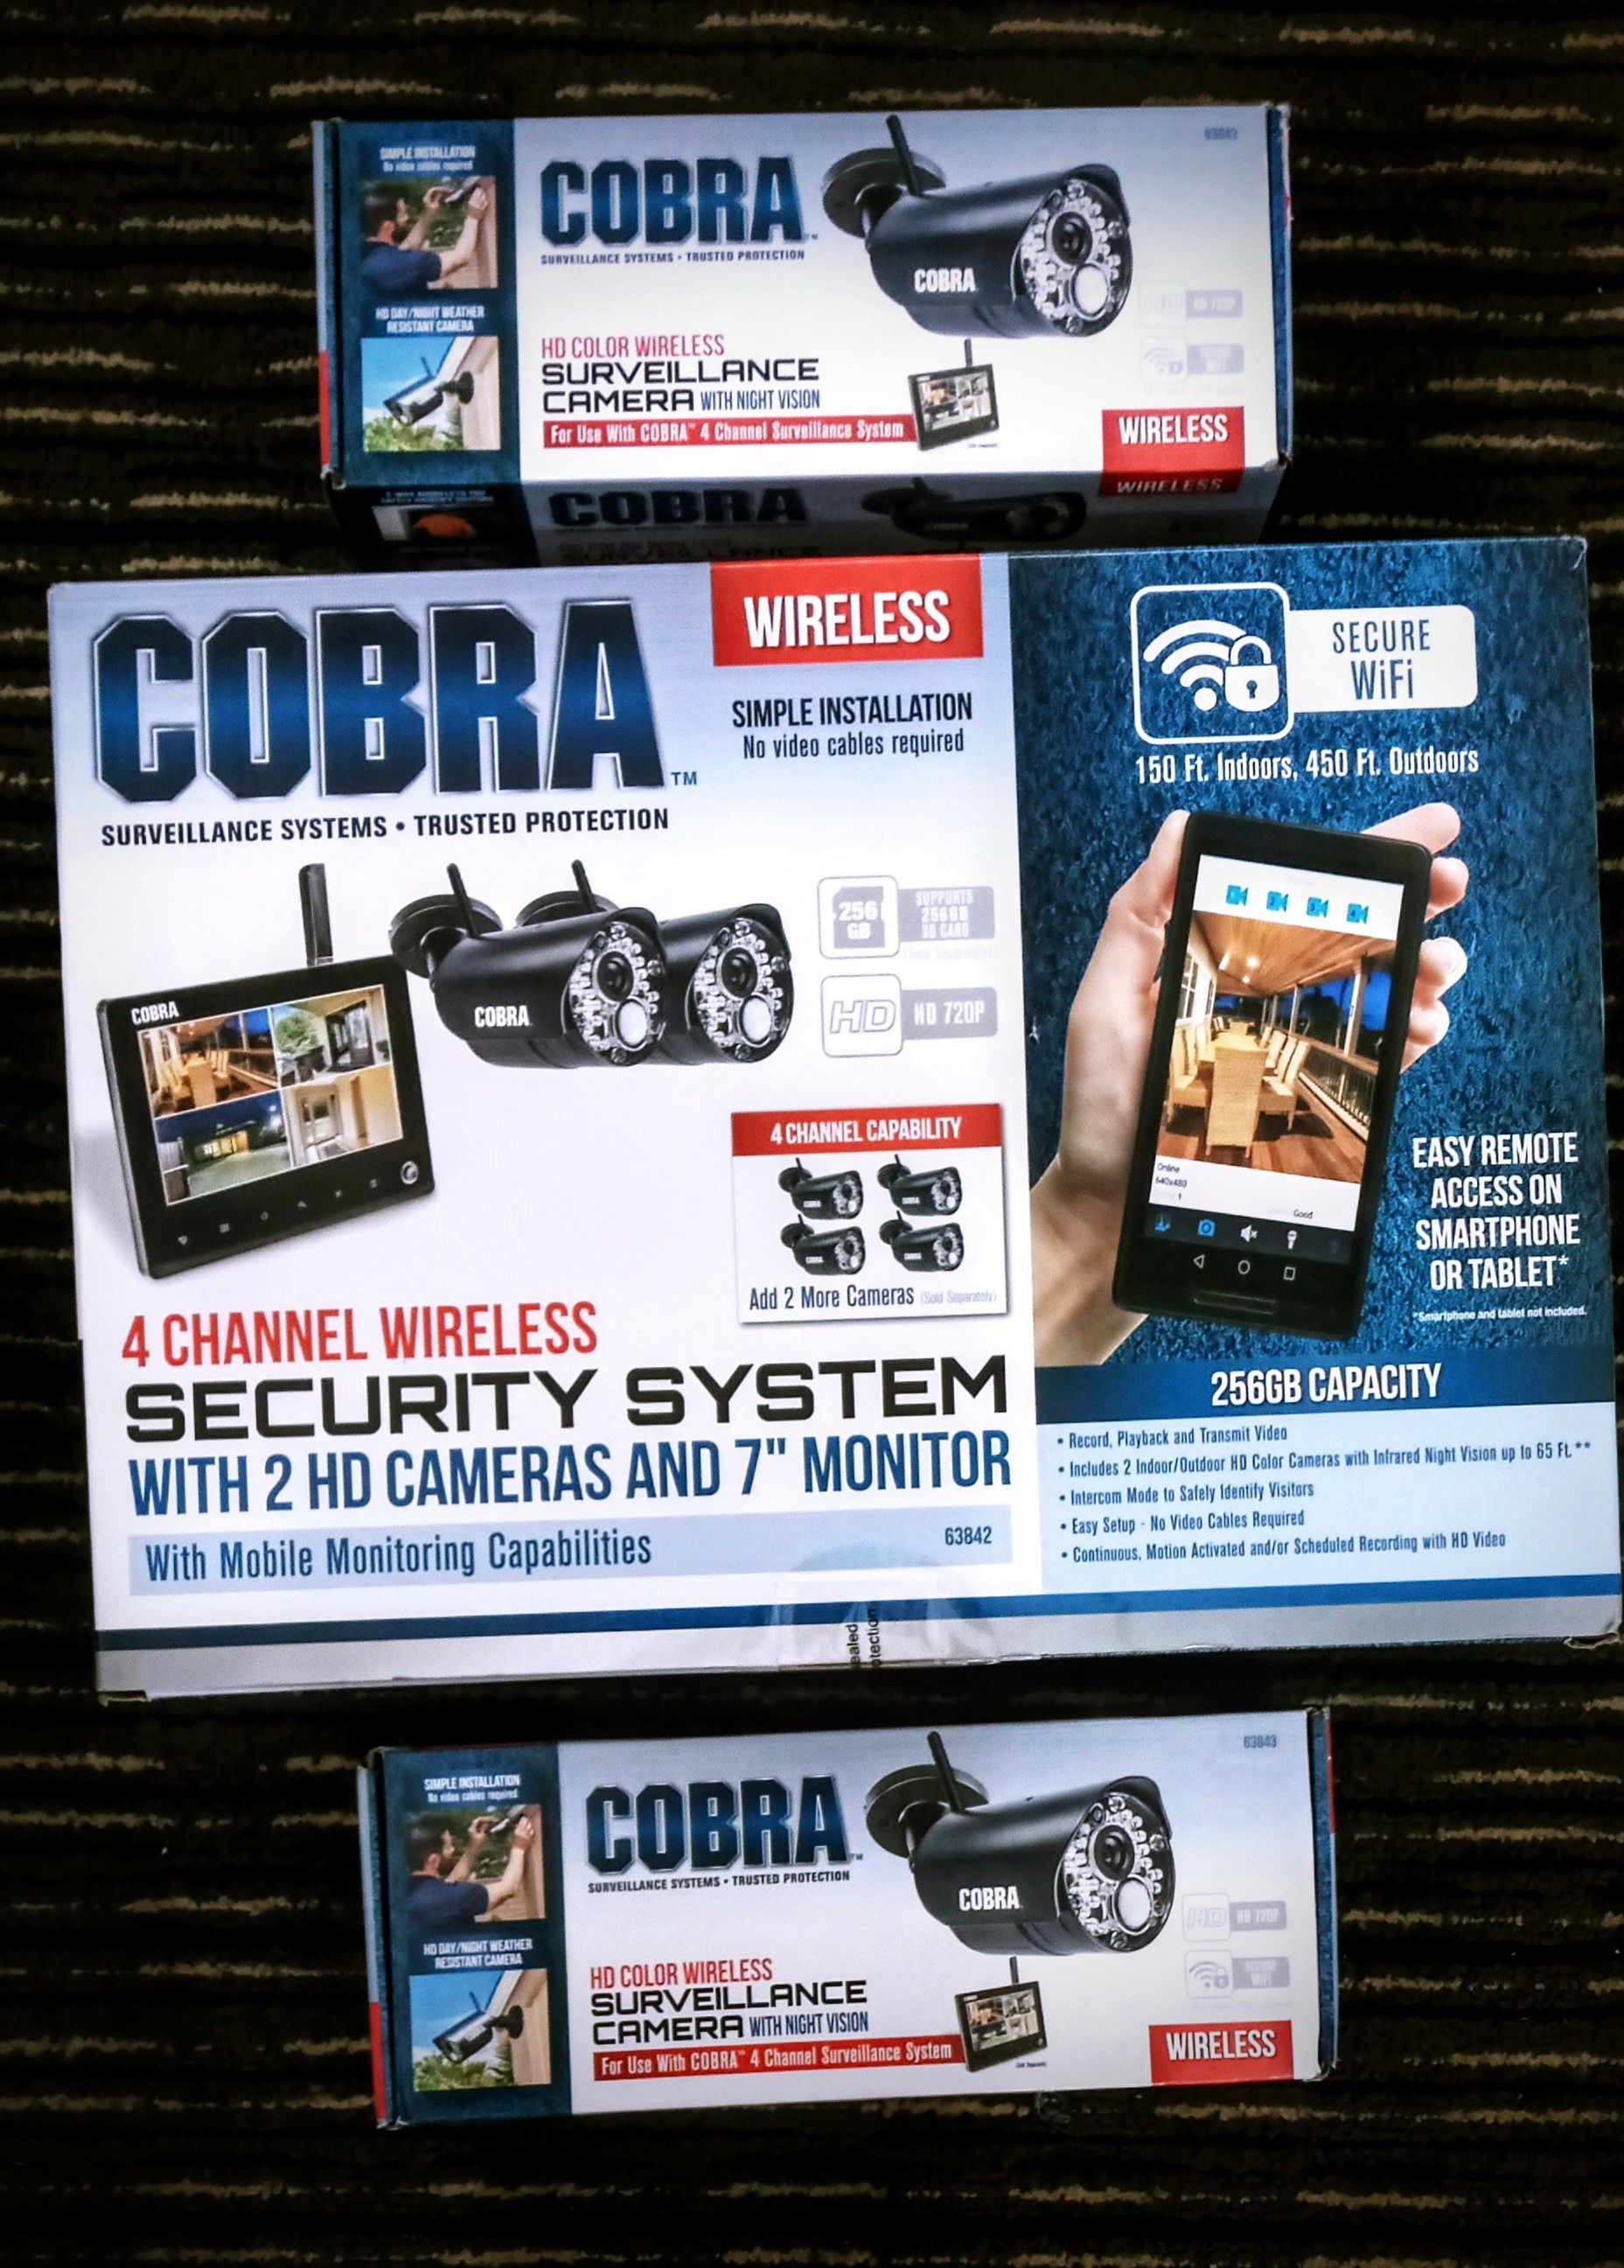 Cobra security system